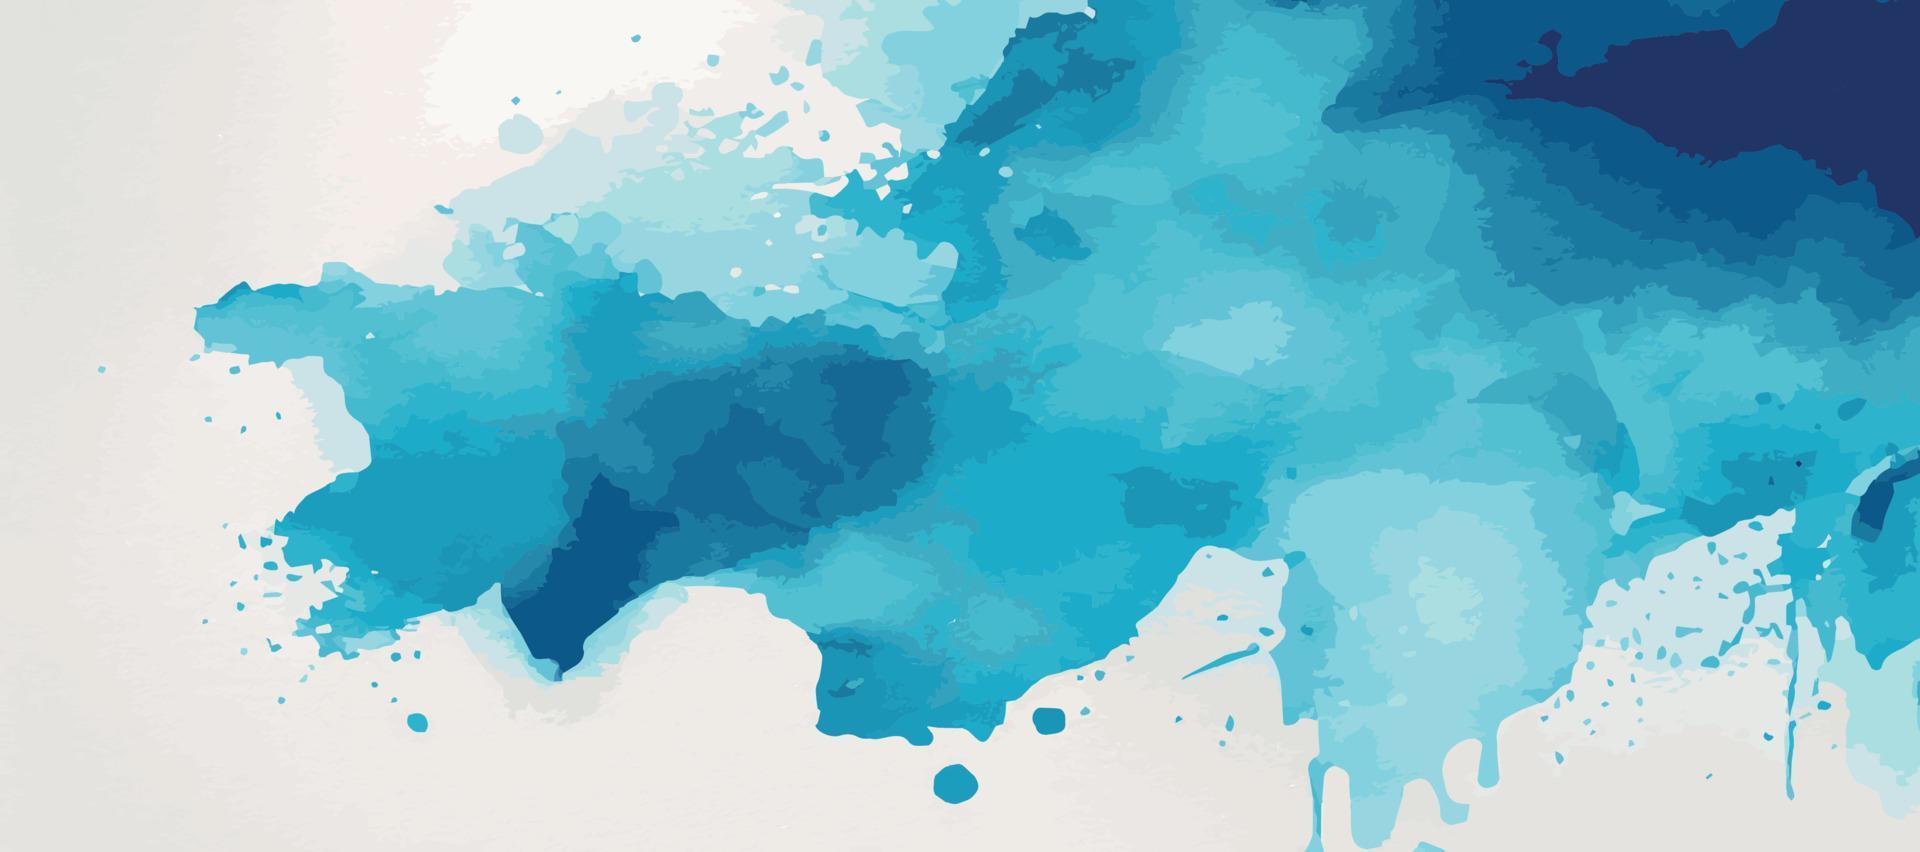 realistische blauwe aquarel panoramische textuur op witte achtergrond - vector